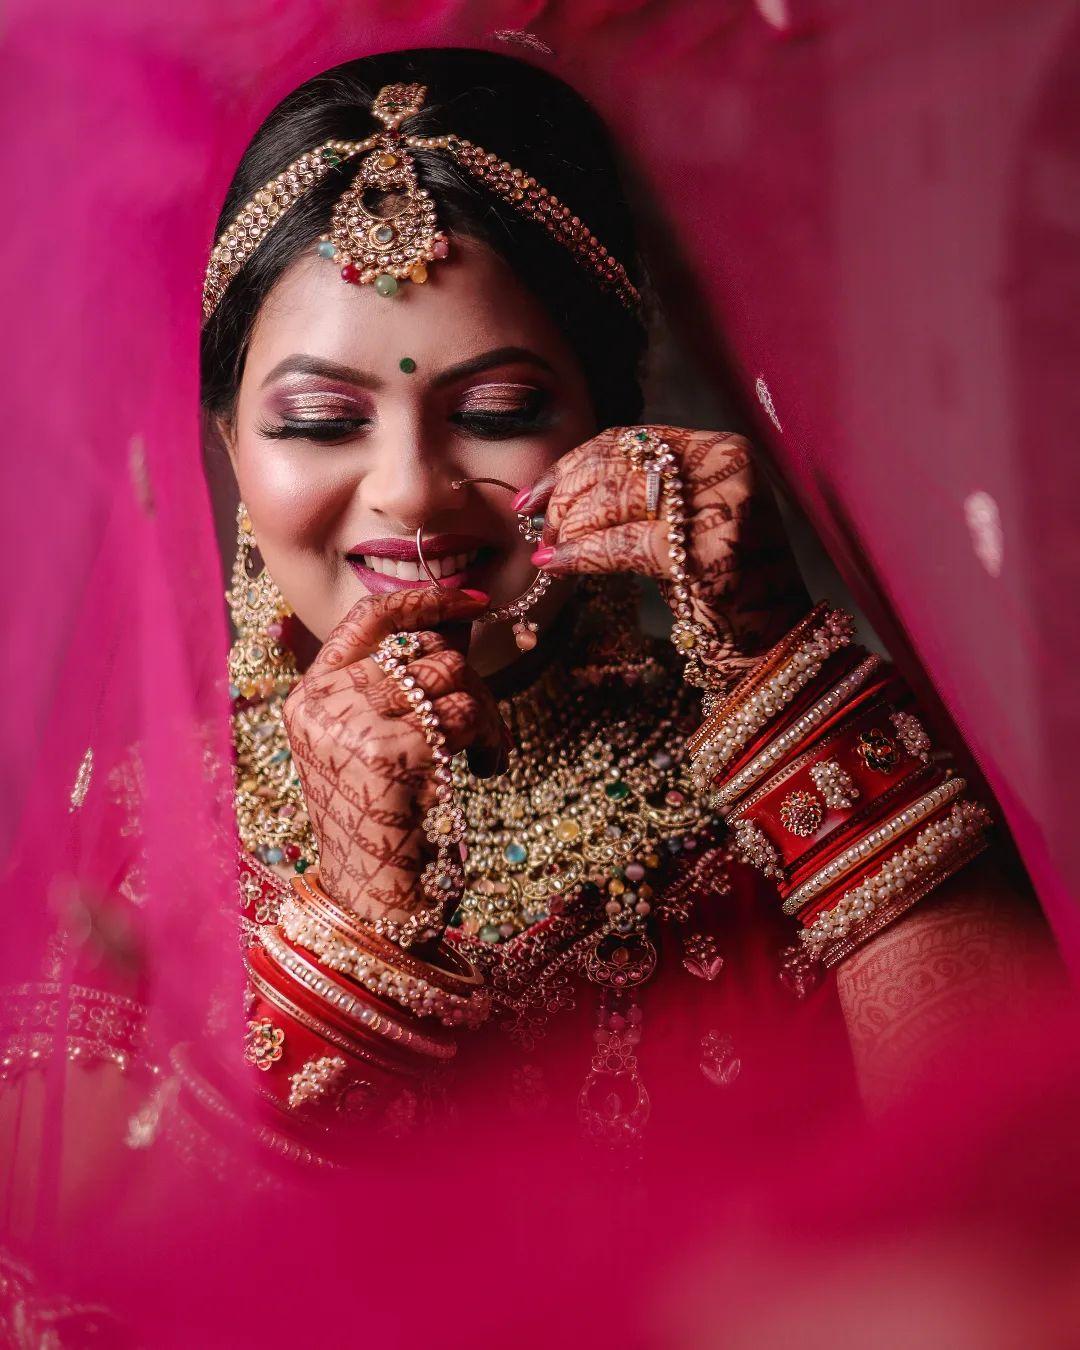 Best Candid Photographers In Chennai | Jaihind Photography | Groom  photoshoot, Wedding photoshoot poses, Indian wedding photography poses